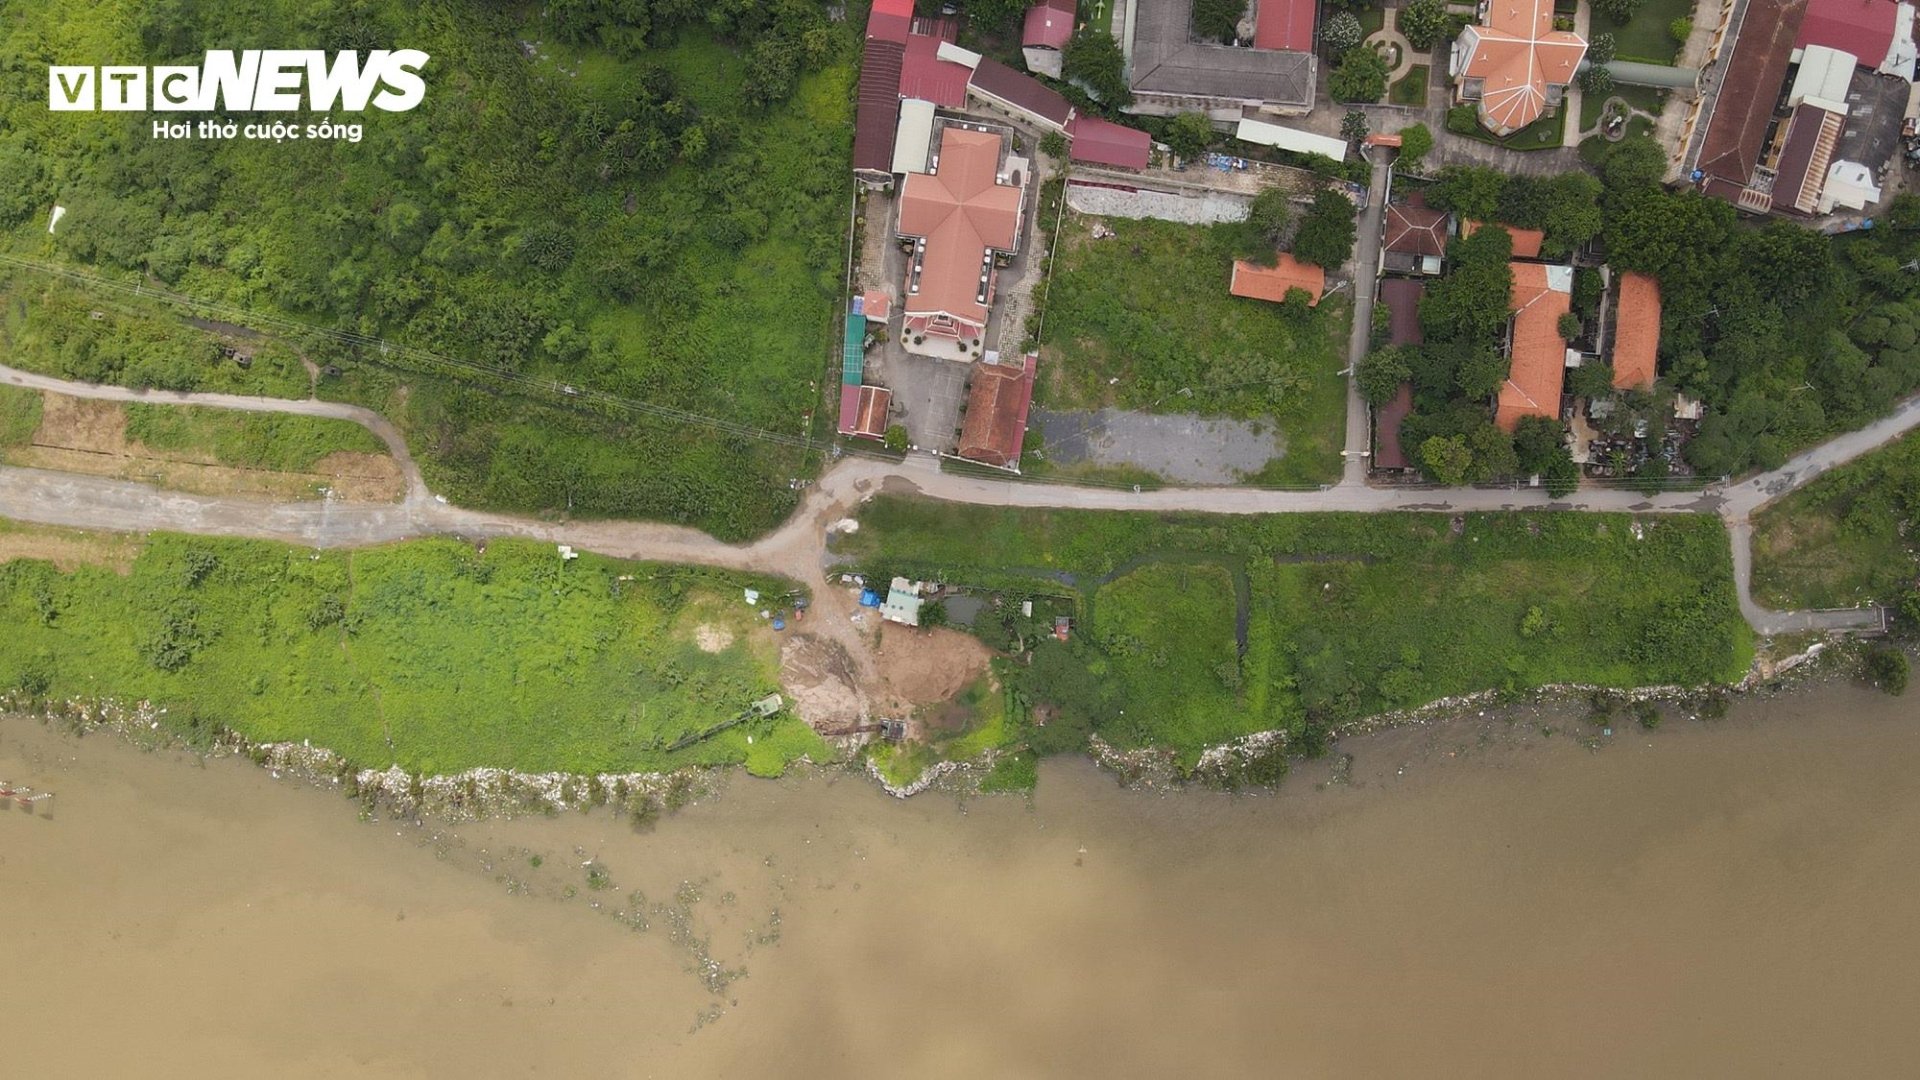 Cảnh đối lập 2 bờ sông Sài Gòn: Nơi sầm uất hiện đại, chỗ cỏ dại mọc um tùm - 5